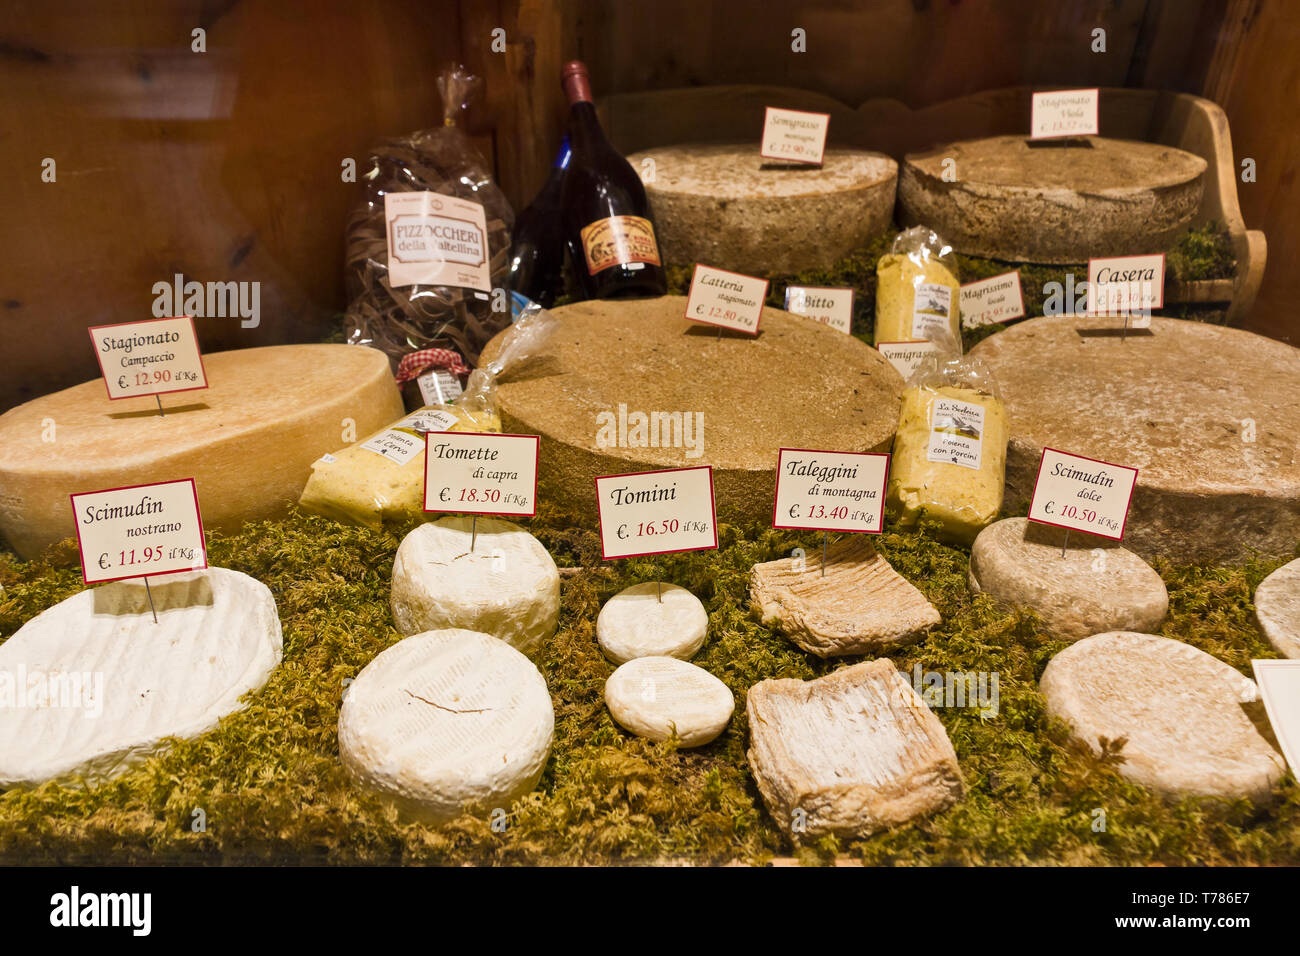 Bormio, boutique 'La Sceleira' : formaggi tipici valtellinesi. [ENG] Bormio, 'La Sceleira' shop : types de fromages typiques de la Valteline. Banque D'Images